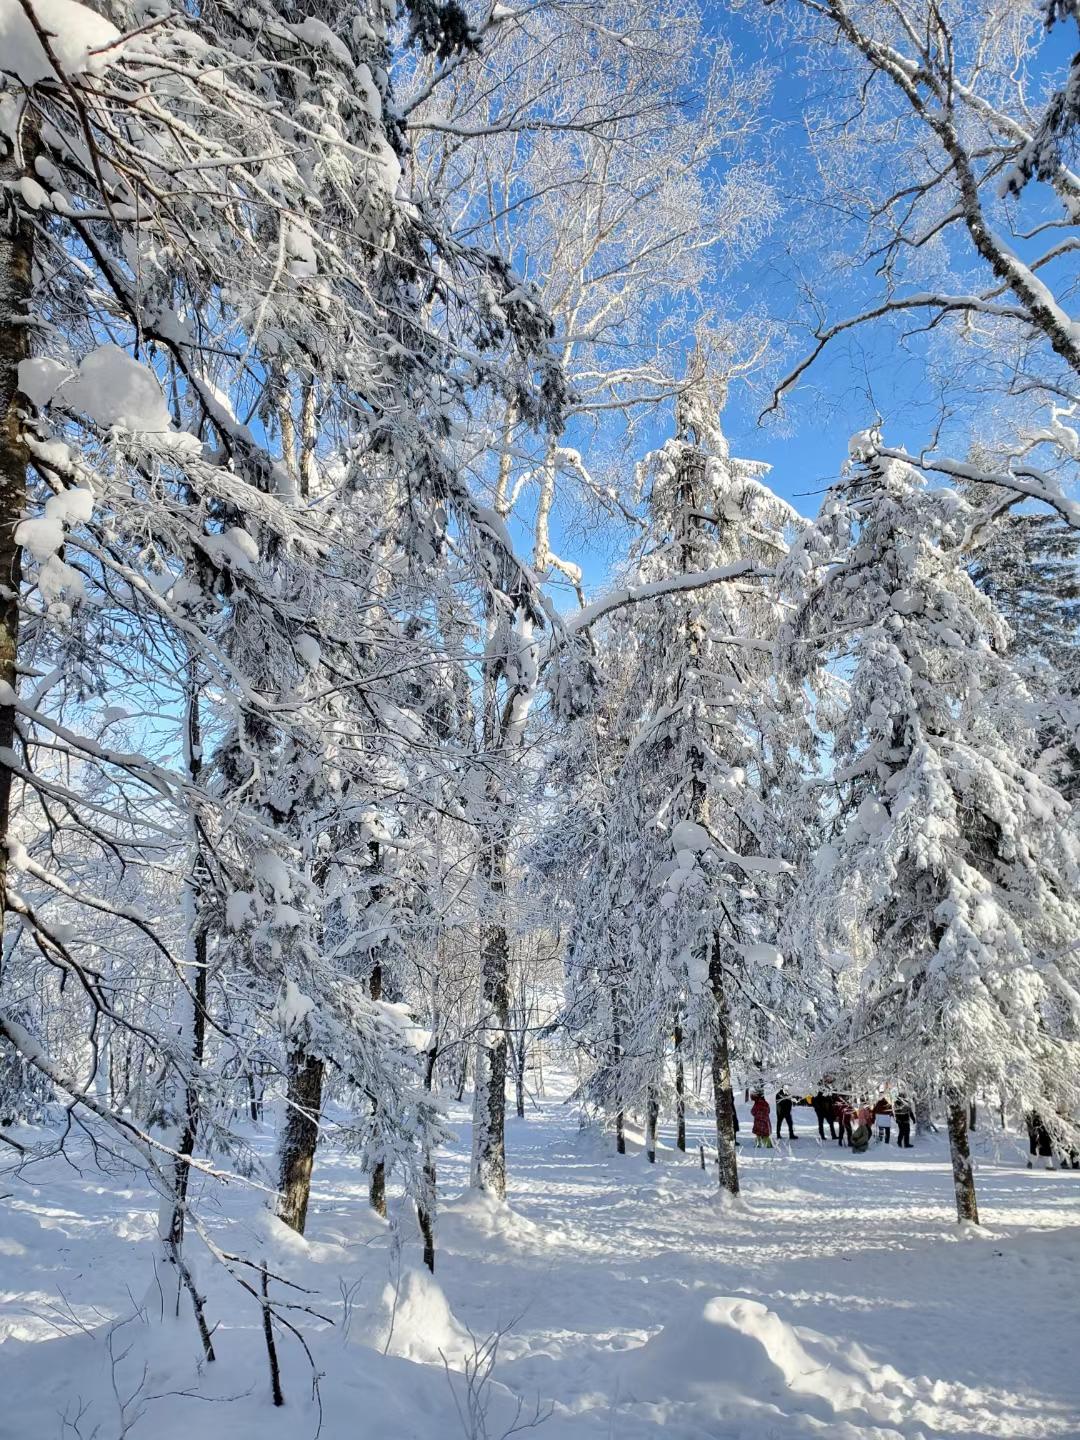 手机拍摄雪景技巧图片